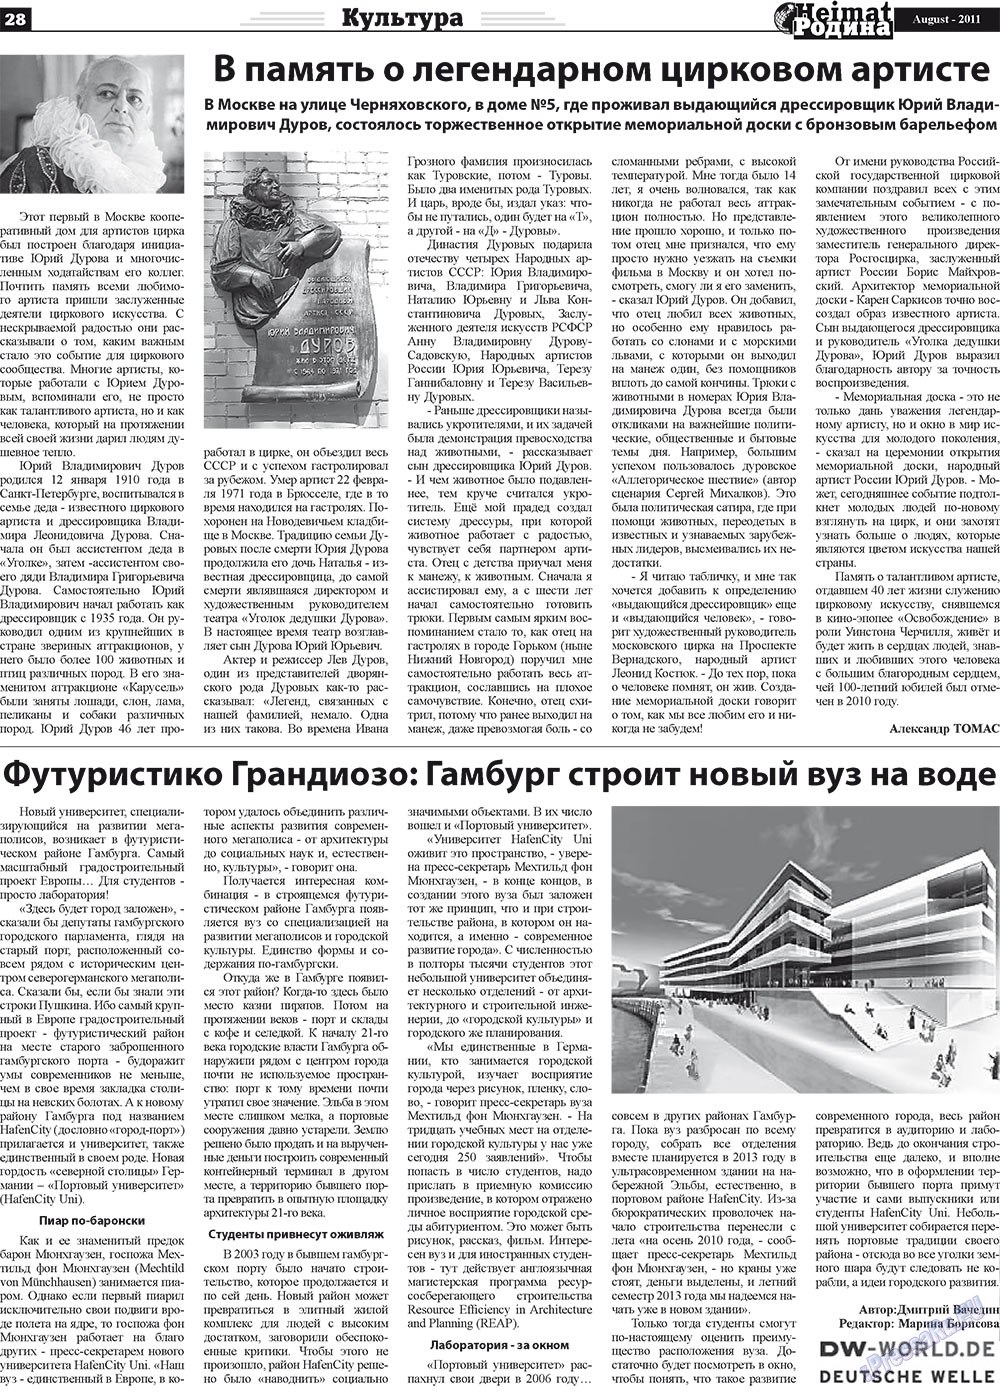 Heimat-Родина (газета). 2011 год, номер 8, стр. 28